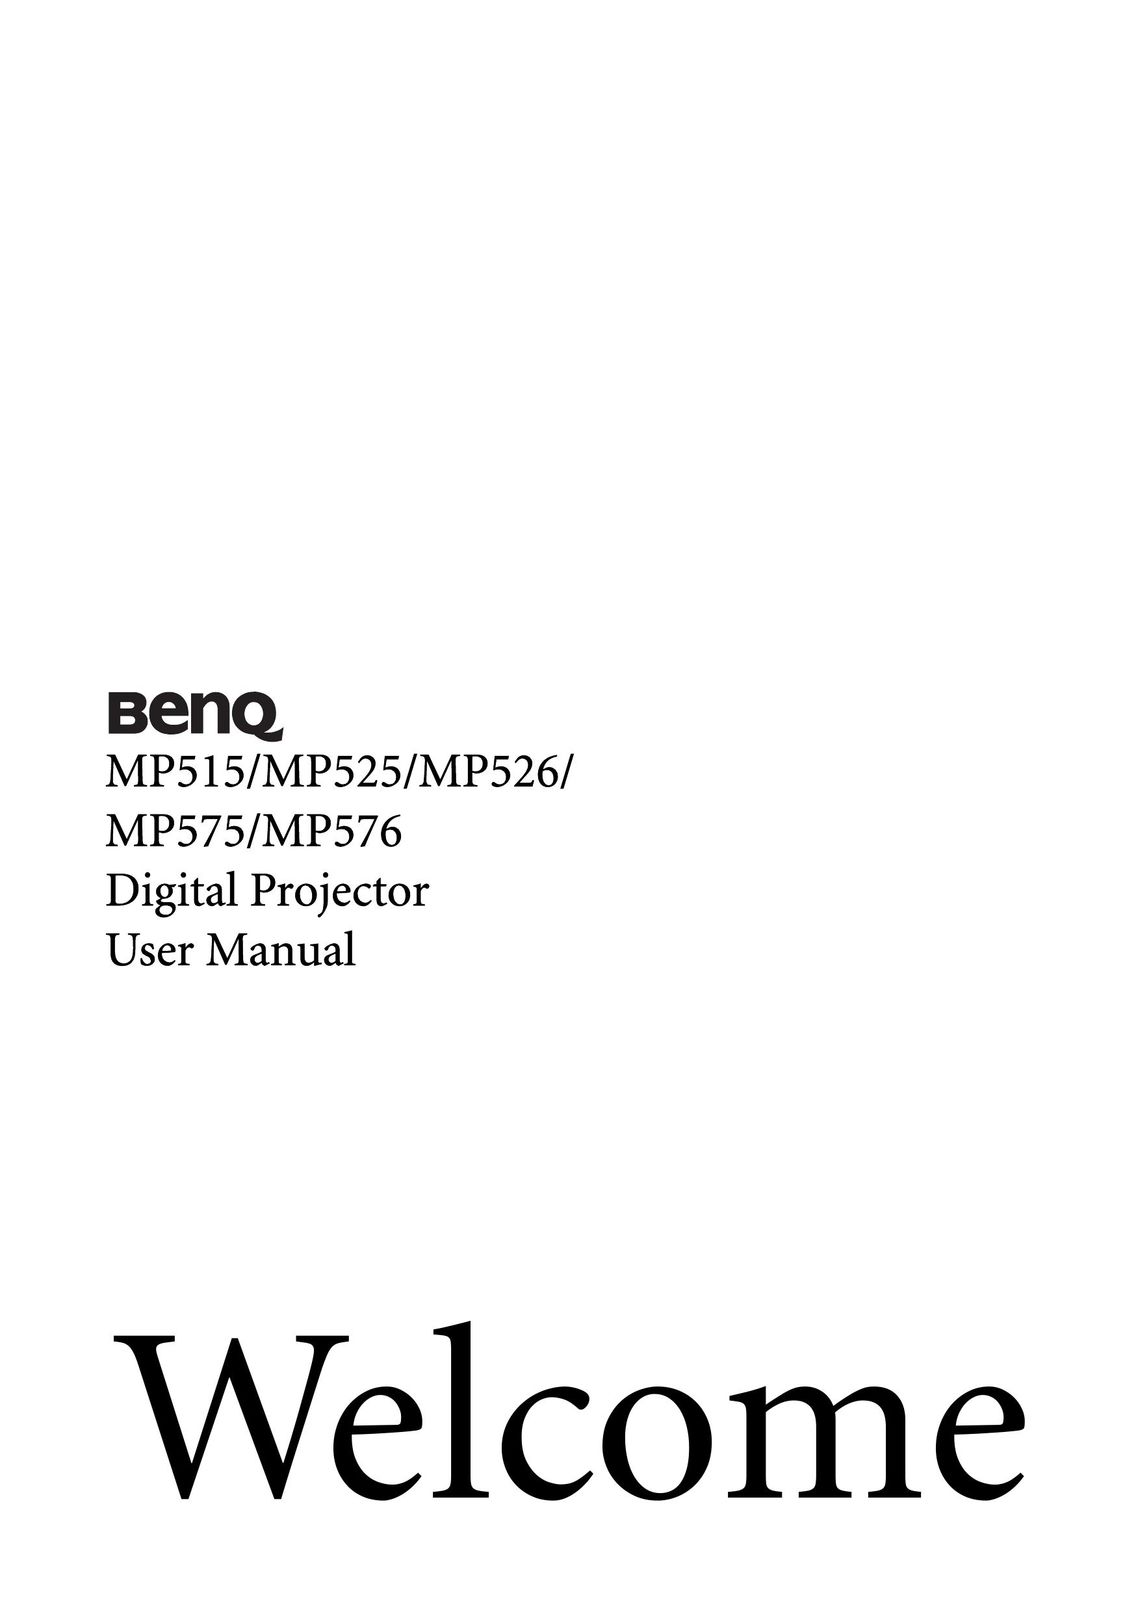 BenQ MP525 Projector User Manual